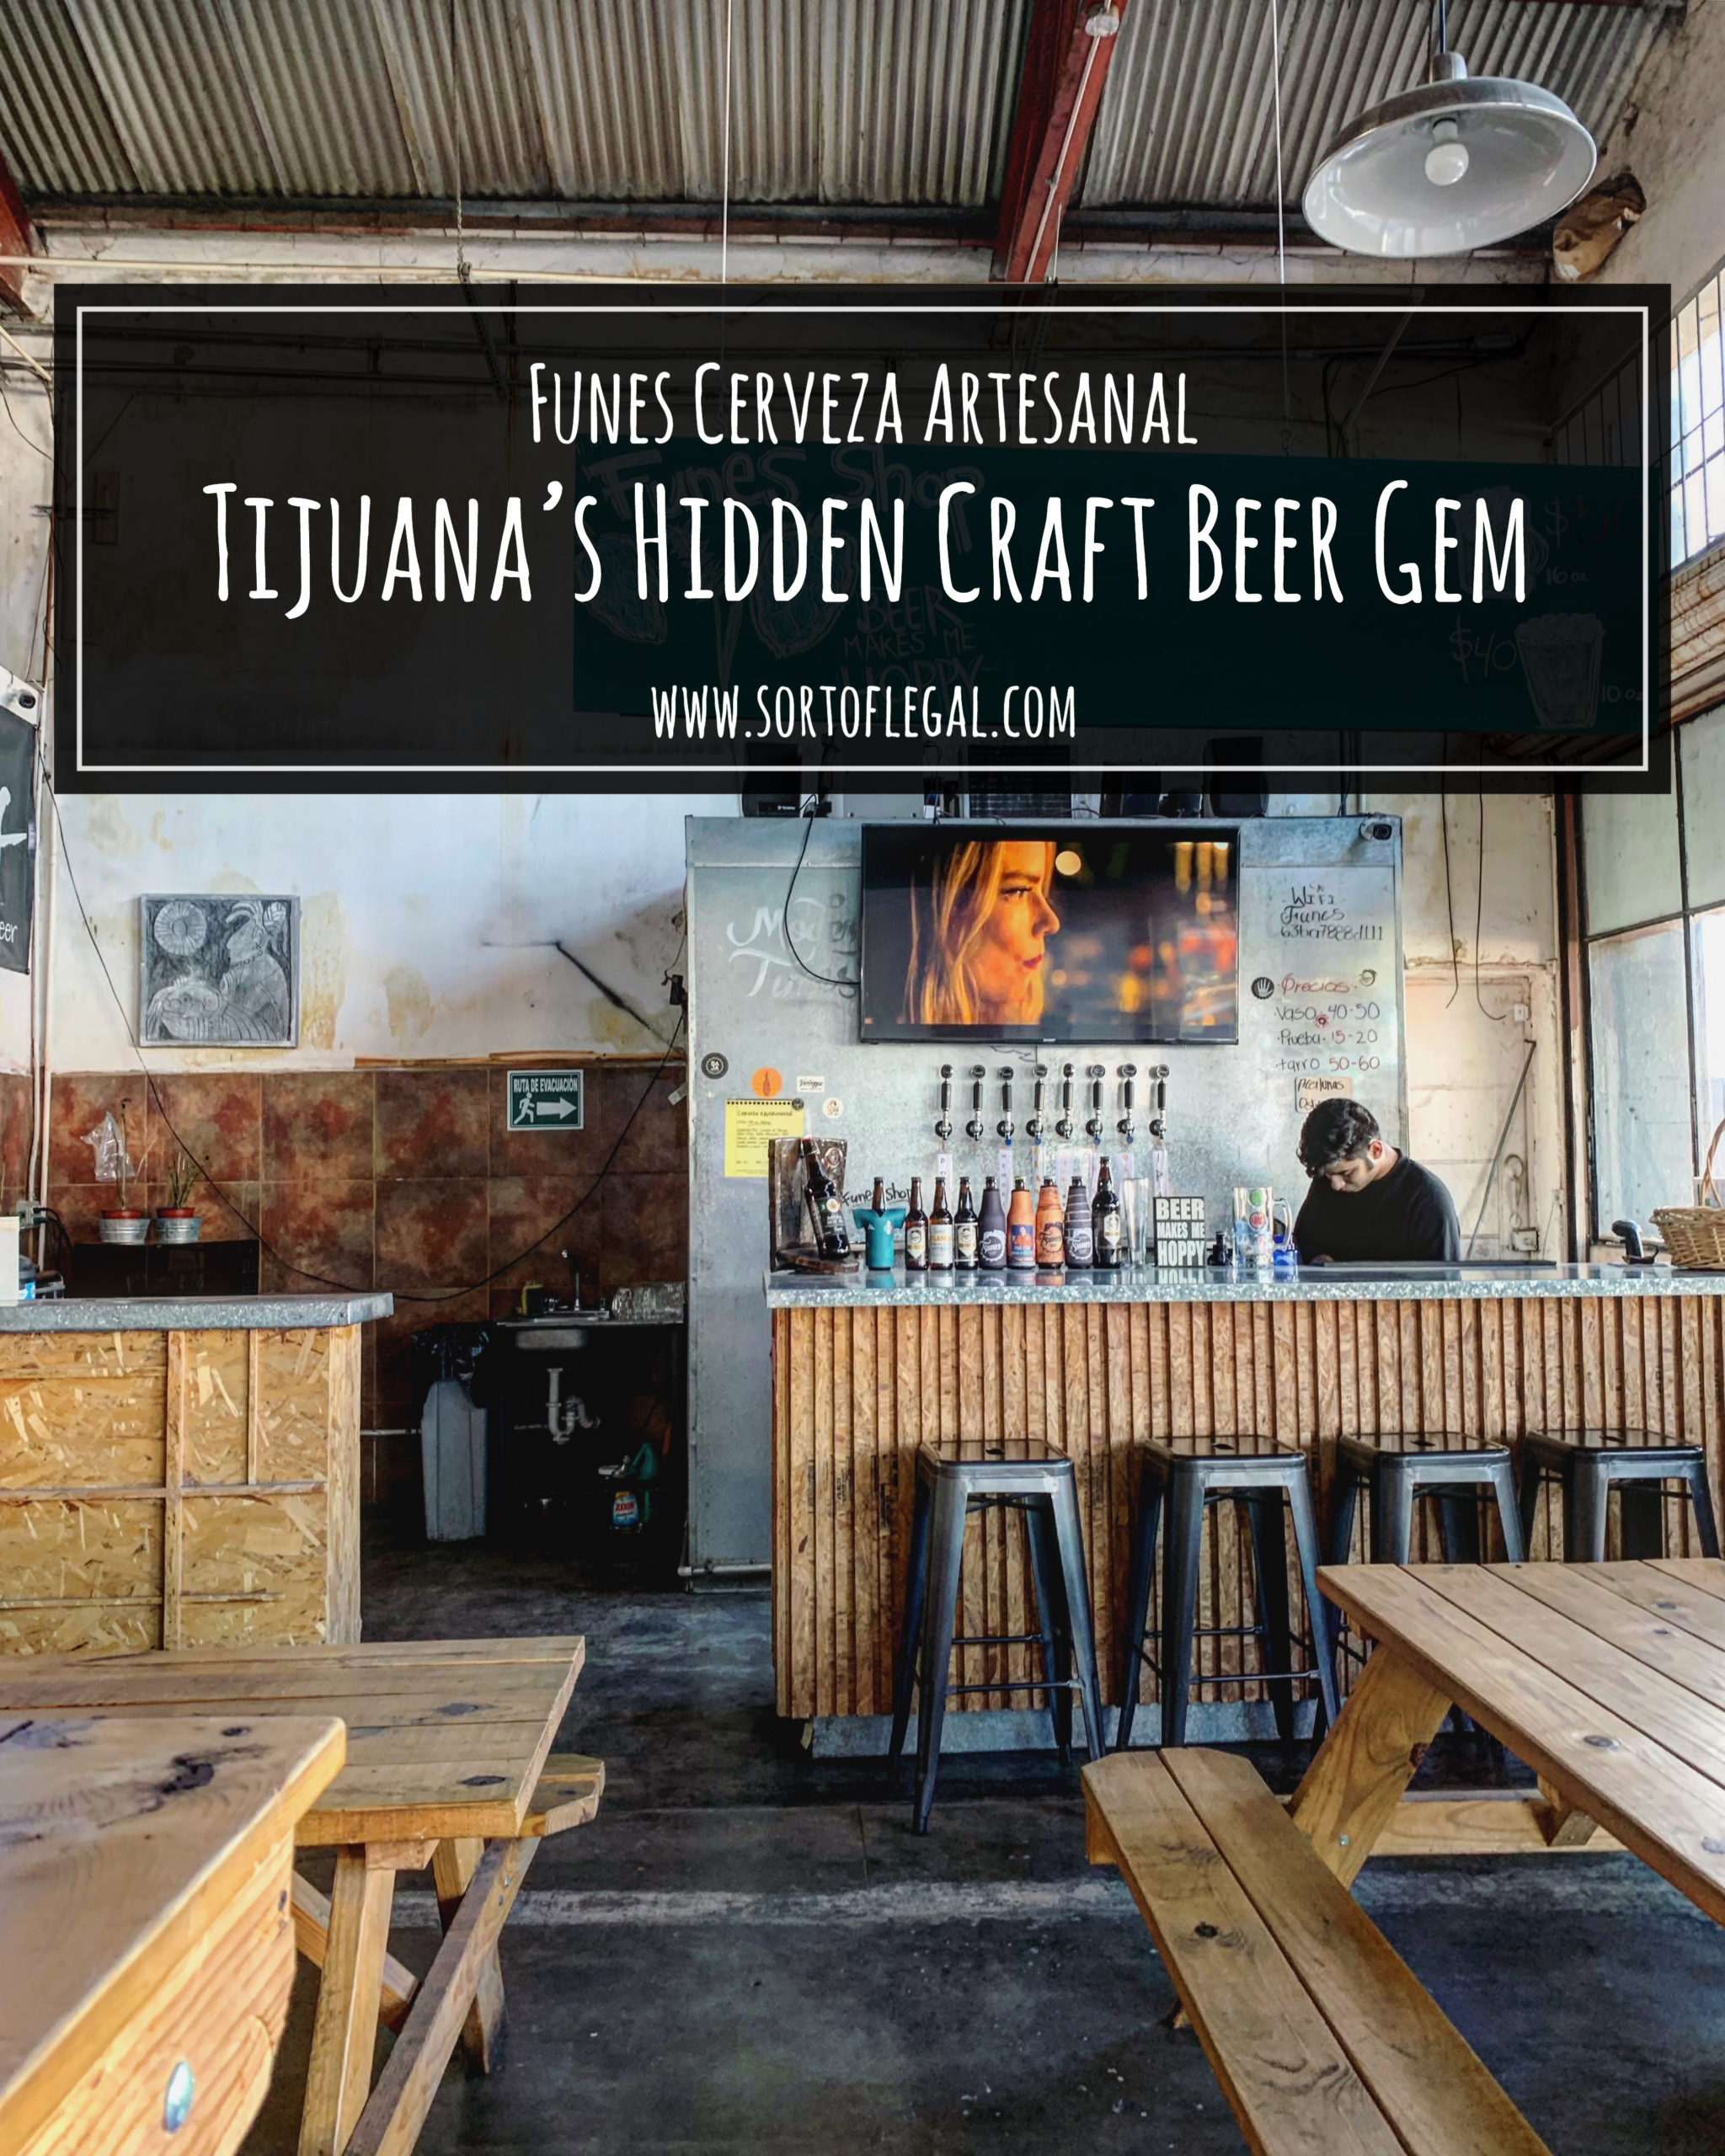 Simple Bar at Tijuana, Mexico's Nano Craft Brewery Funes Cervez Artesanal